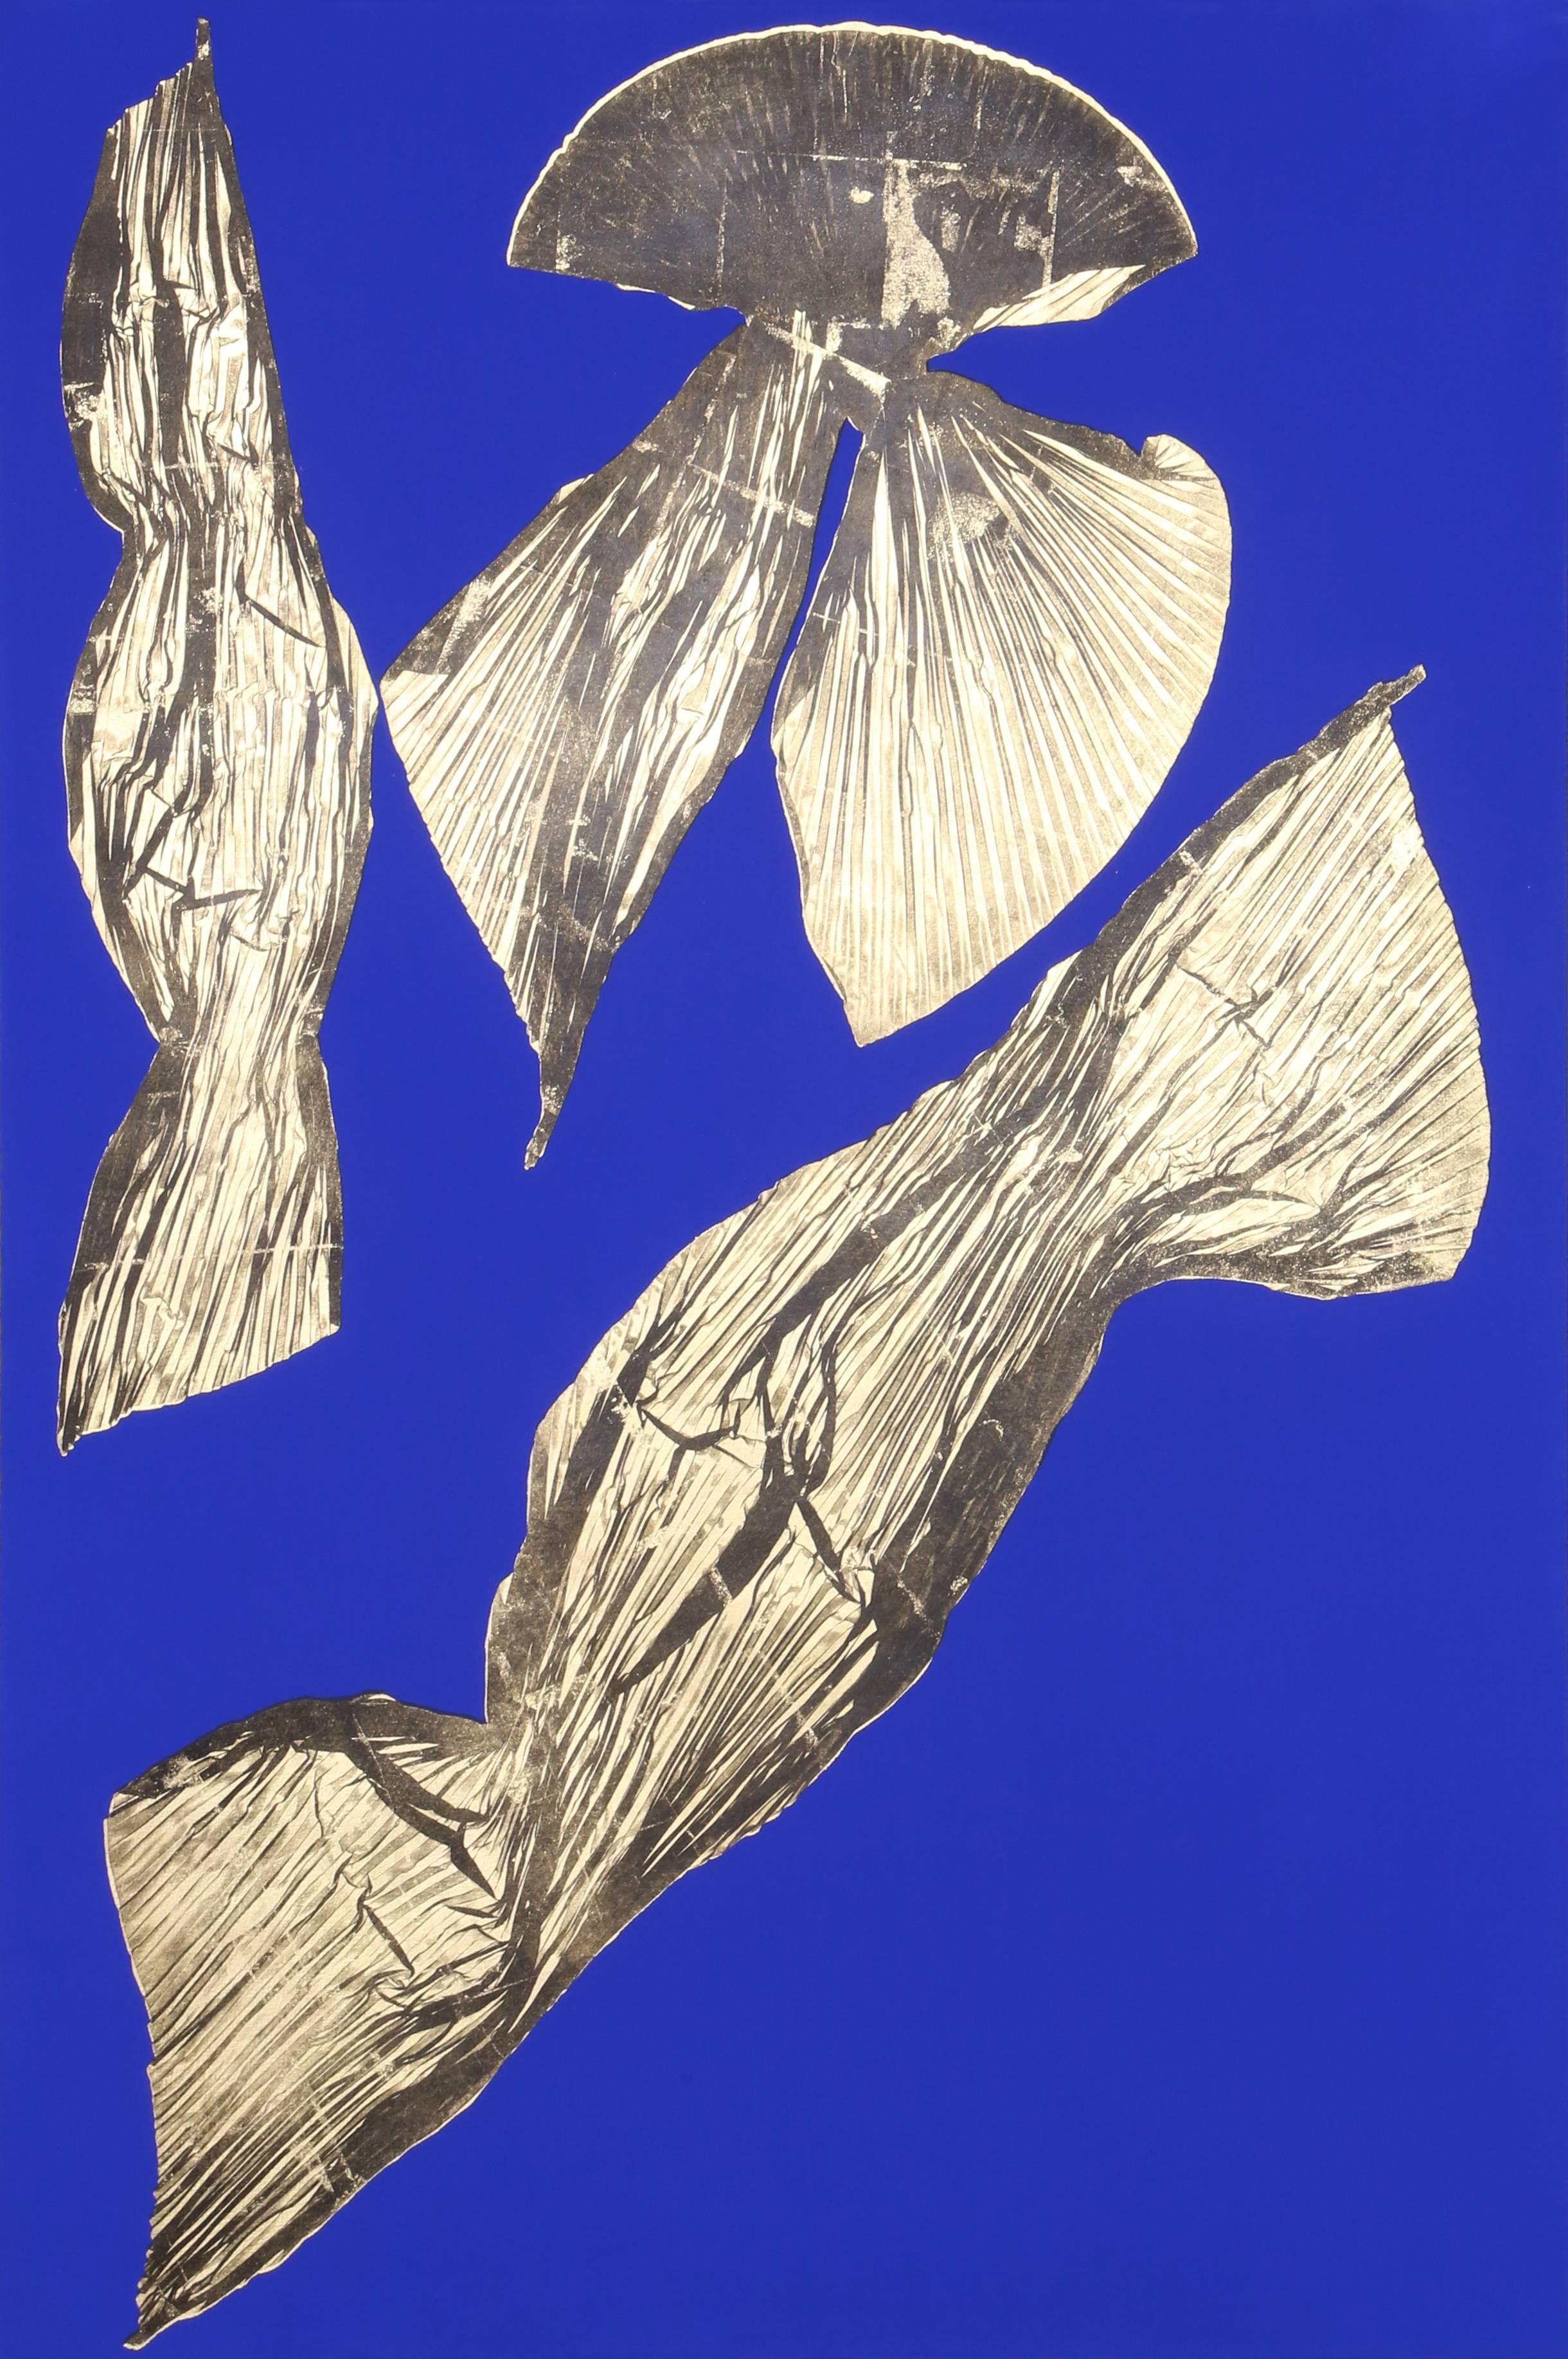 Künstlerin: Lynda Benglis, Amerikanerin (geb. 1941)
Titel: Doppelte Natur (Blau)
Jahr: 1991
Medium: Lithographie mit Blattgold auf handkoloriertem Papier, verso signiert und nummeriert
Auflage: 20, AP
Größe: 47,5  x 31,5 in. (121,92  x 80,01 cm)